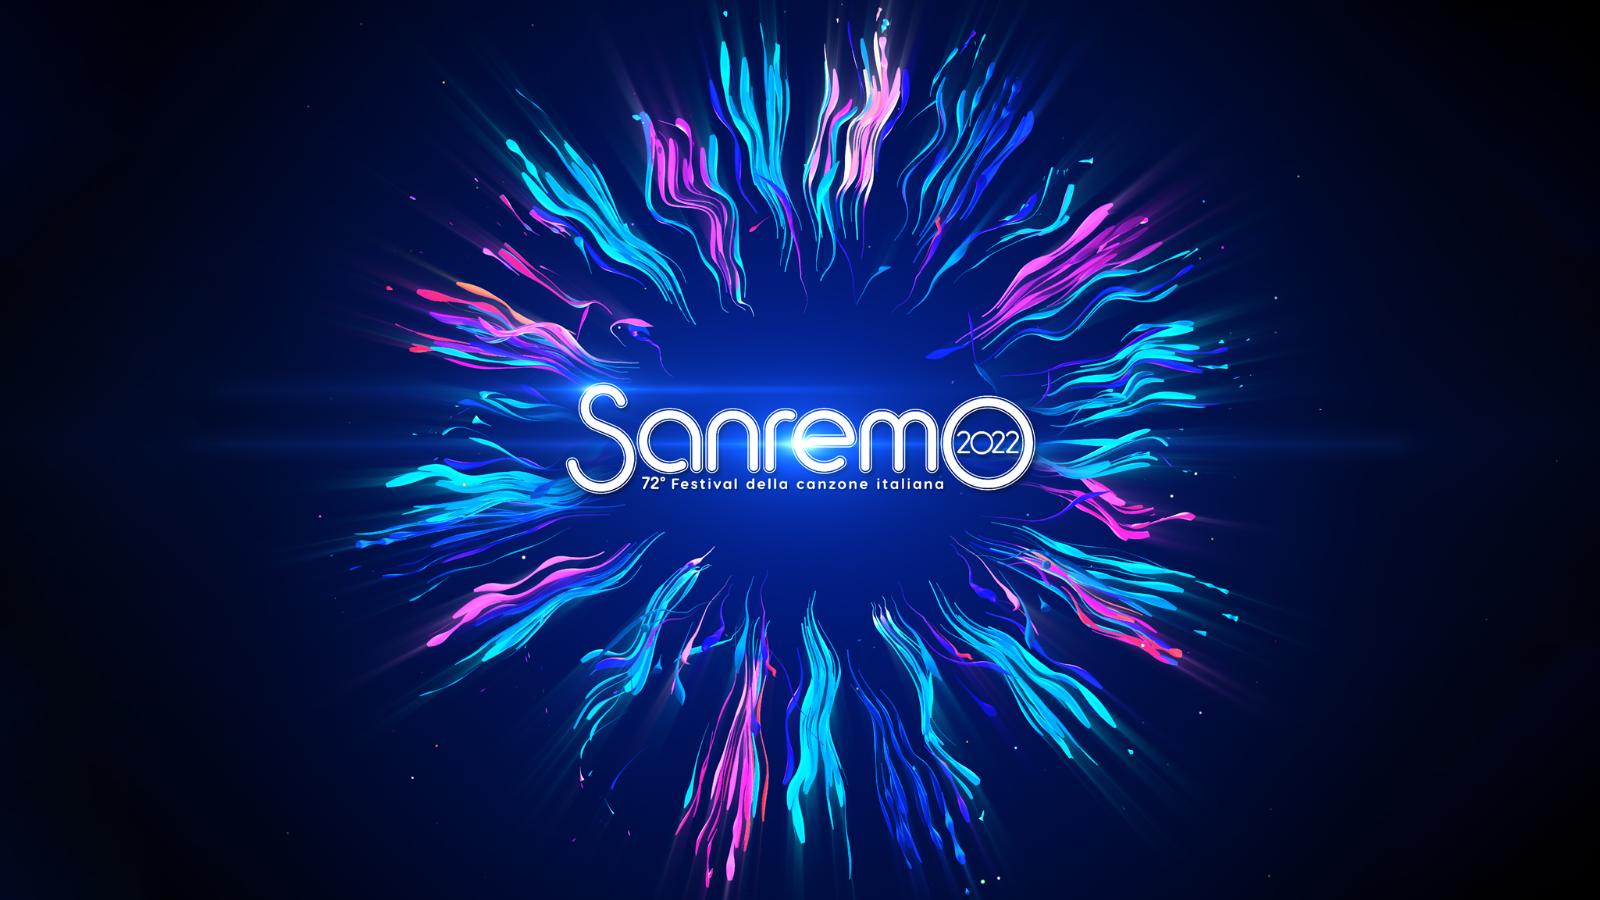 La produzione di Sanremo 2022: l'impegno Rai - RAI Ufficio Stampa